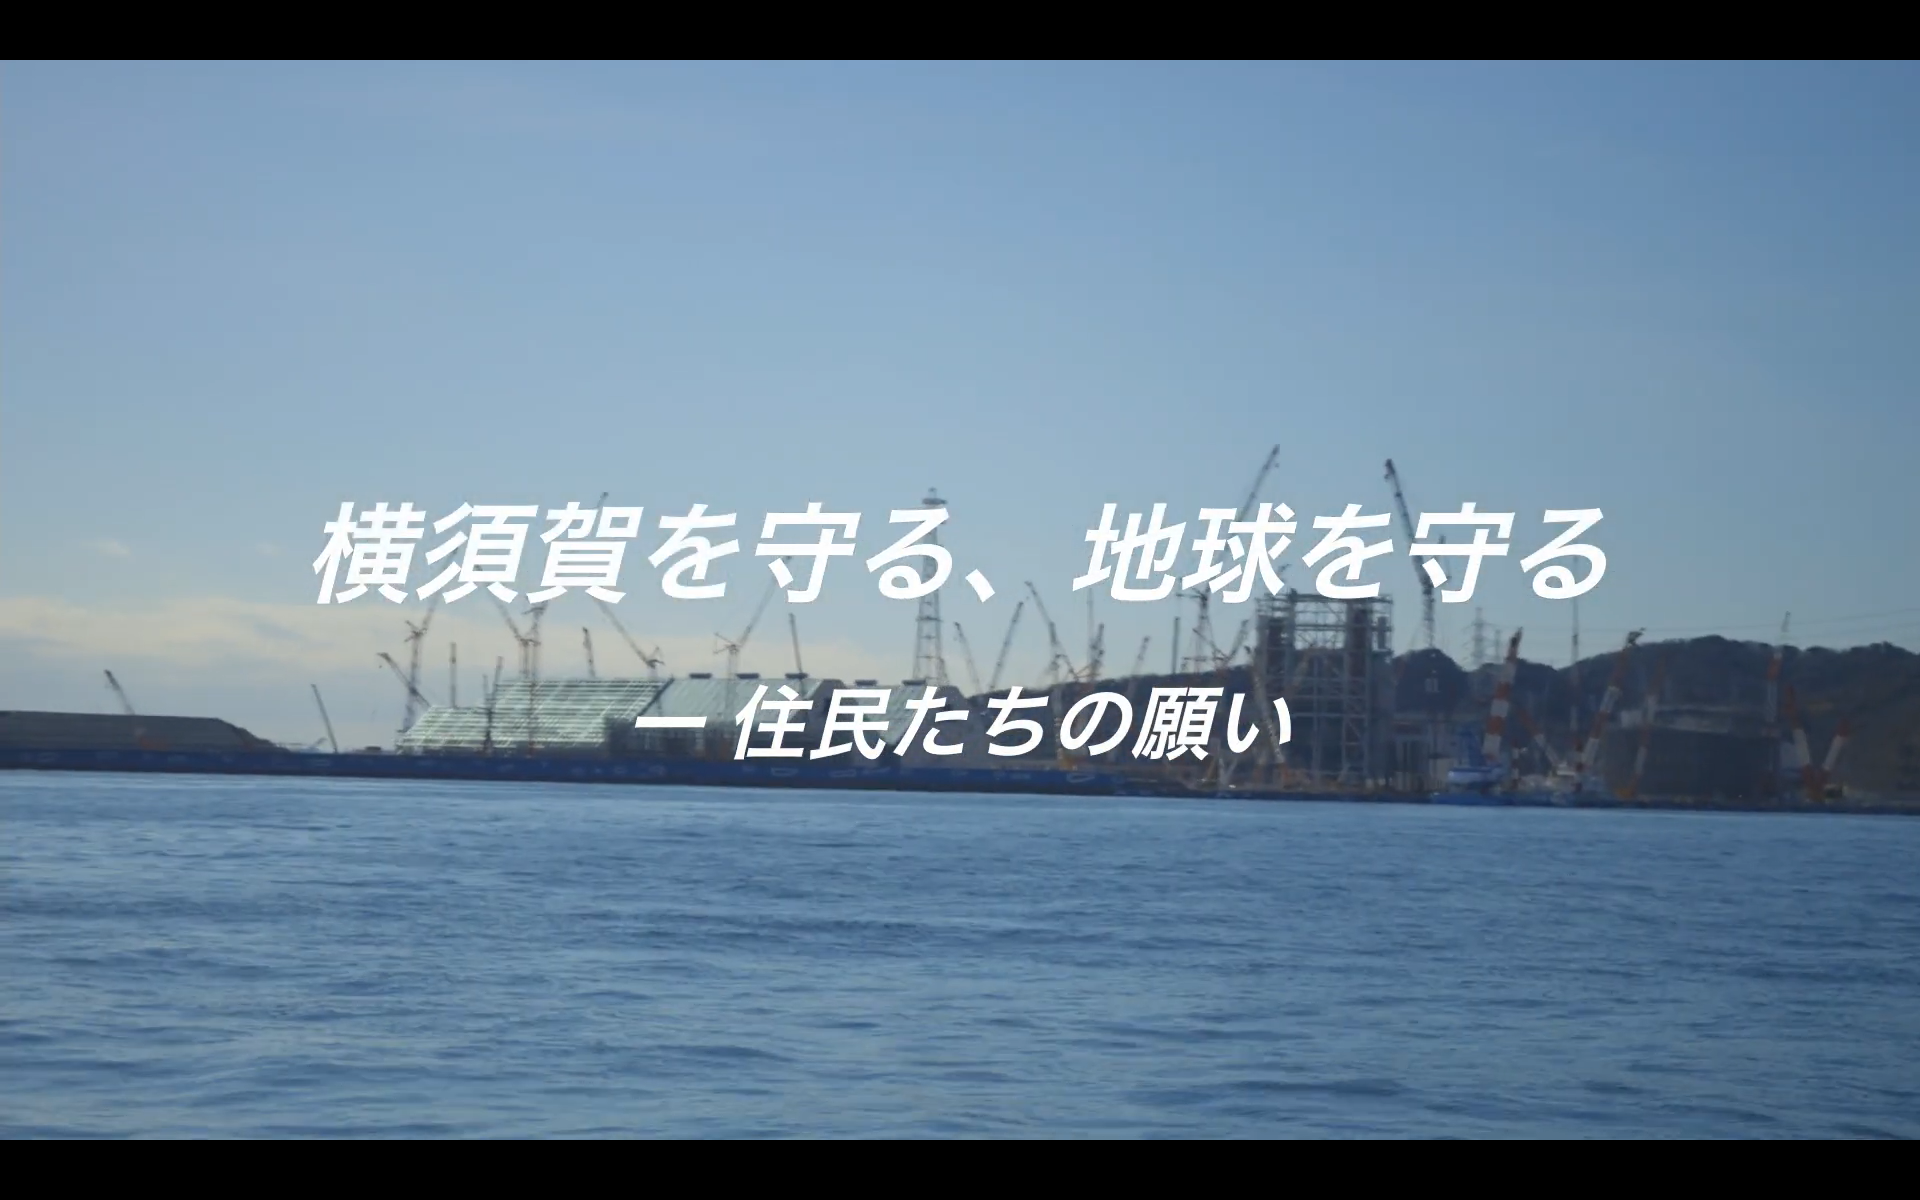 【動画】横須賀石炭火力の建設中止を求める人々の訴えを動画で紹介